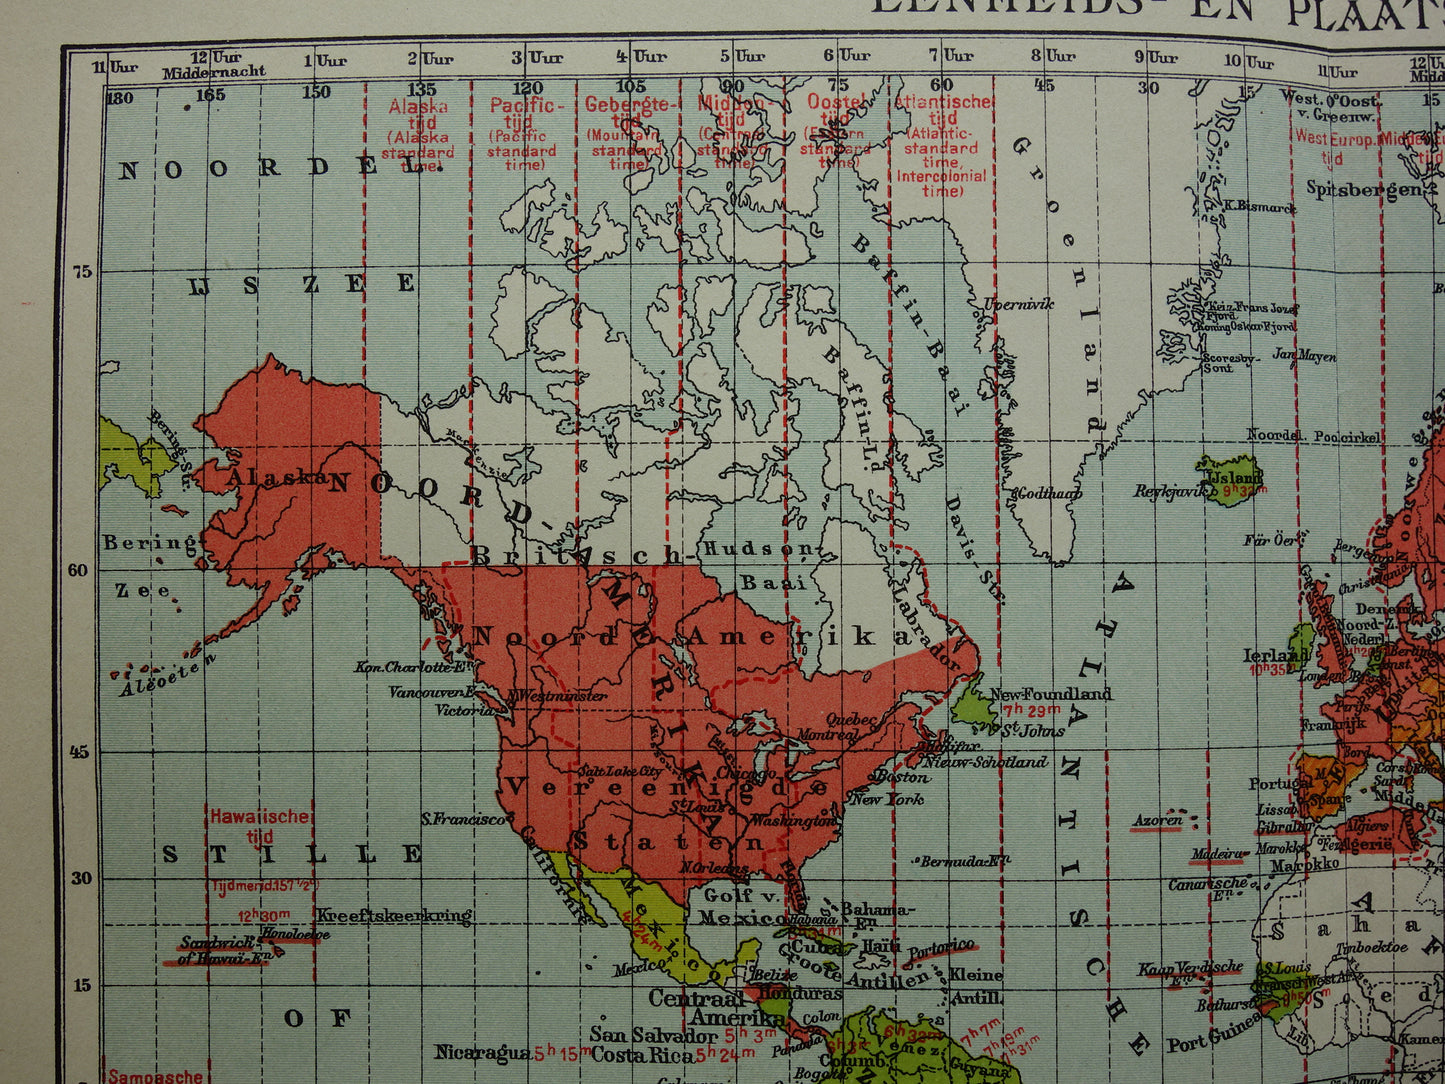 WERELDKAART oude kaart van de wereld met tijdzones 1907 originele antieke Nederlandse landkaart historische kaarten wintertijd zomertijd